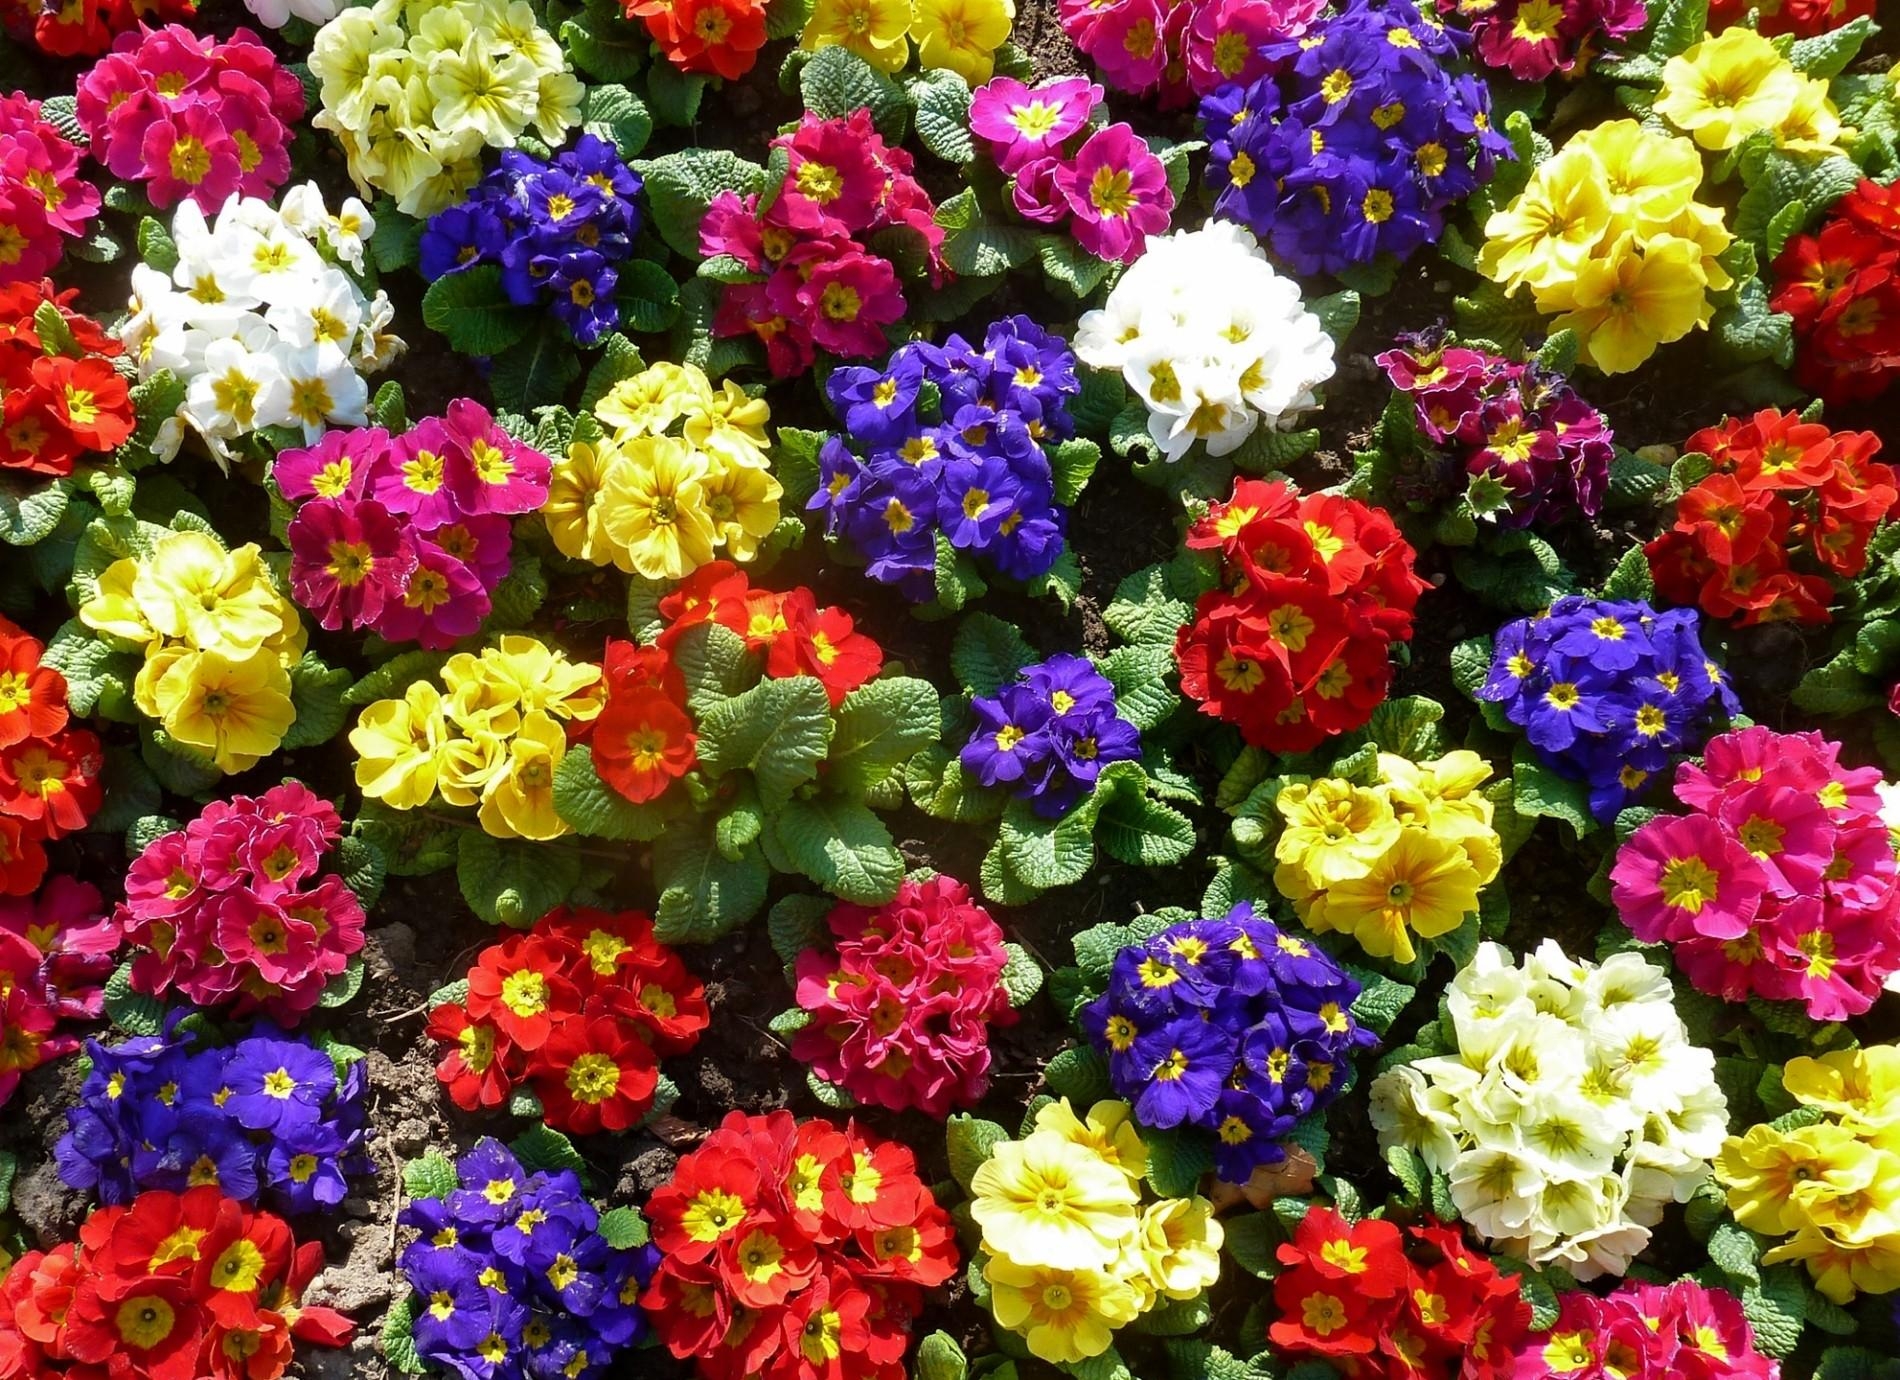 Primrose Flowers Bright Colorful Greens Ground Stock Photos